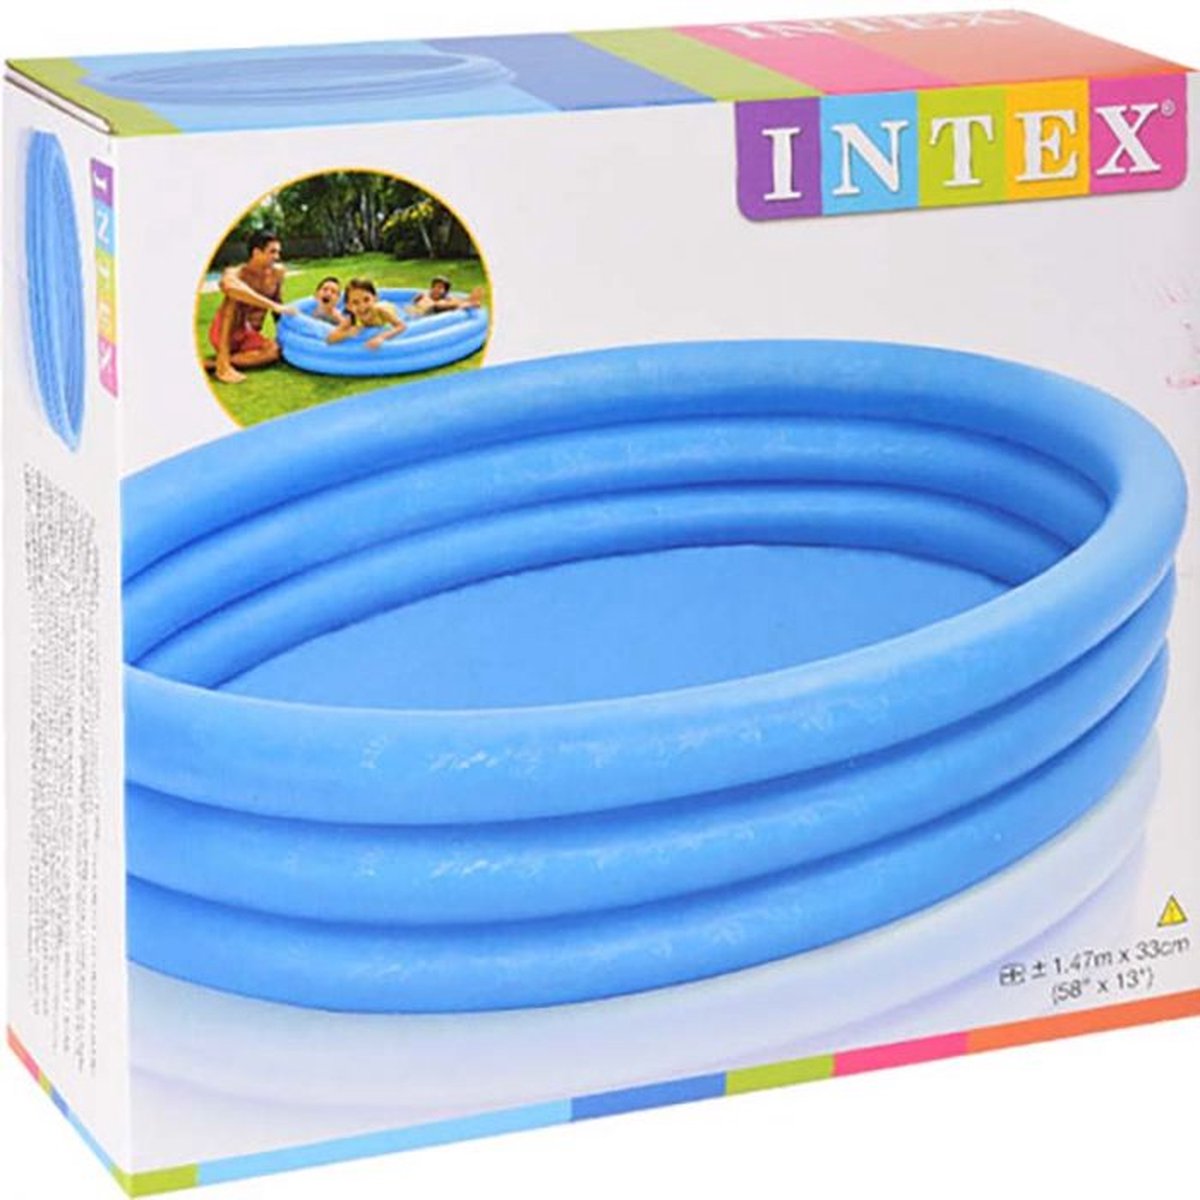 Oneiro's Luxe Intex Zwembad 3 rings - 147cm - zomer - tuin - spelen - speelgoud - buitenspeelgoed - zwembad - zwemmen - zomer - intex - tuinaccessoires - koelen - opblaasbaar